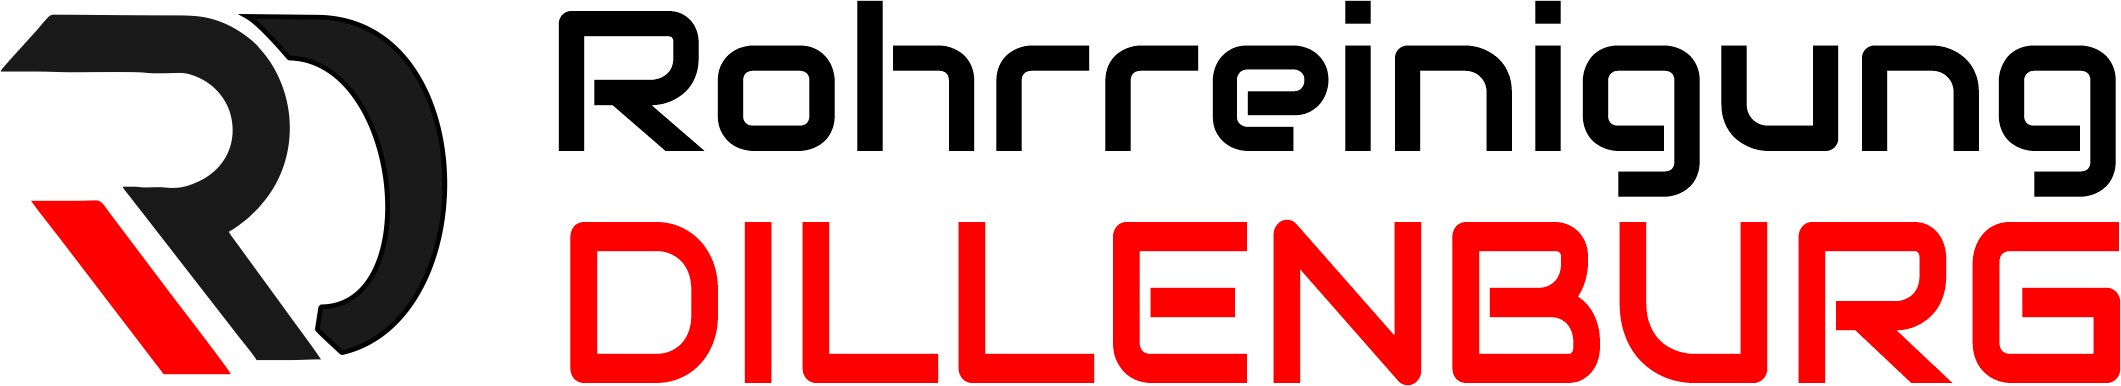 Rohrreinigung Dillenburg Logo